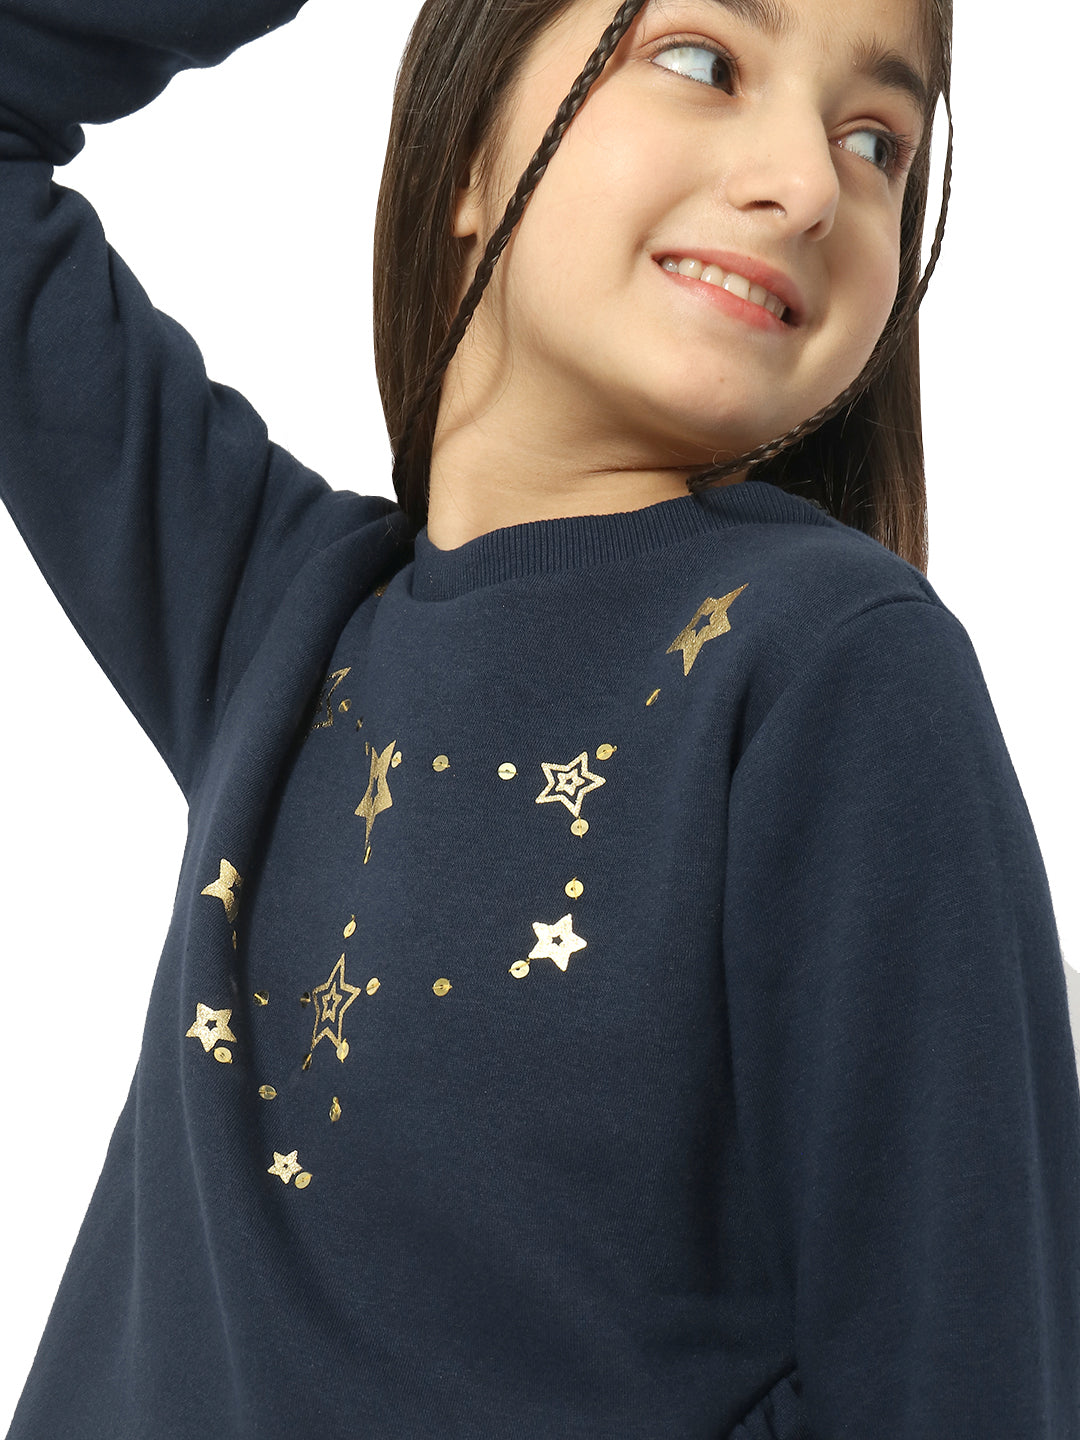 Natilene Girls Navy Blue Graphic Printed Sweatshirt